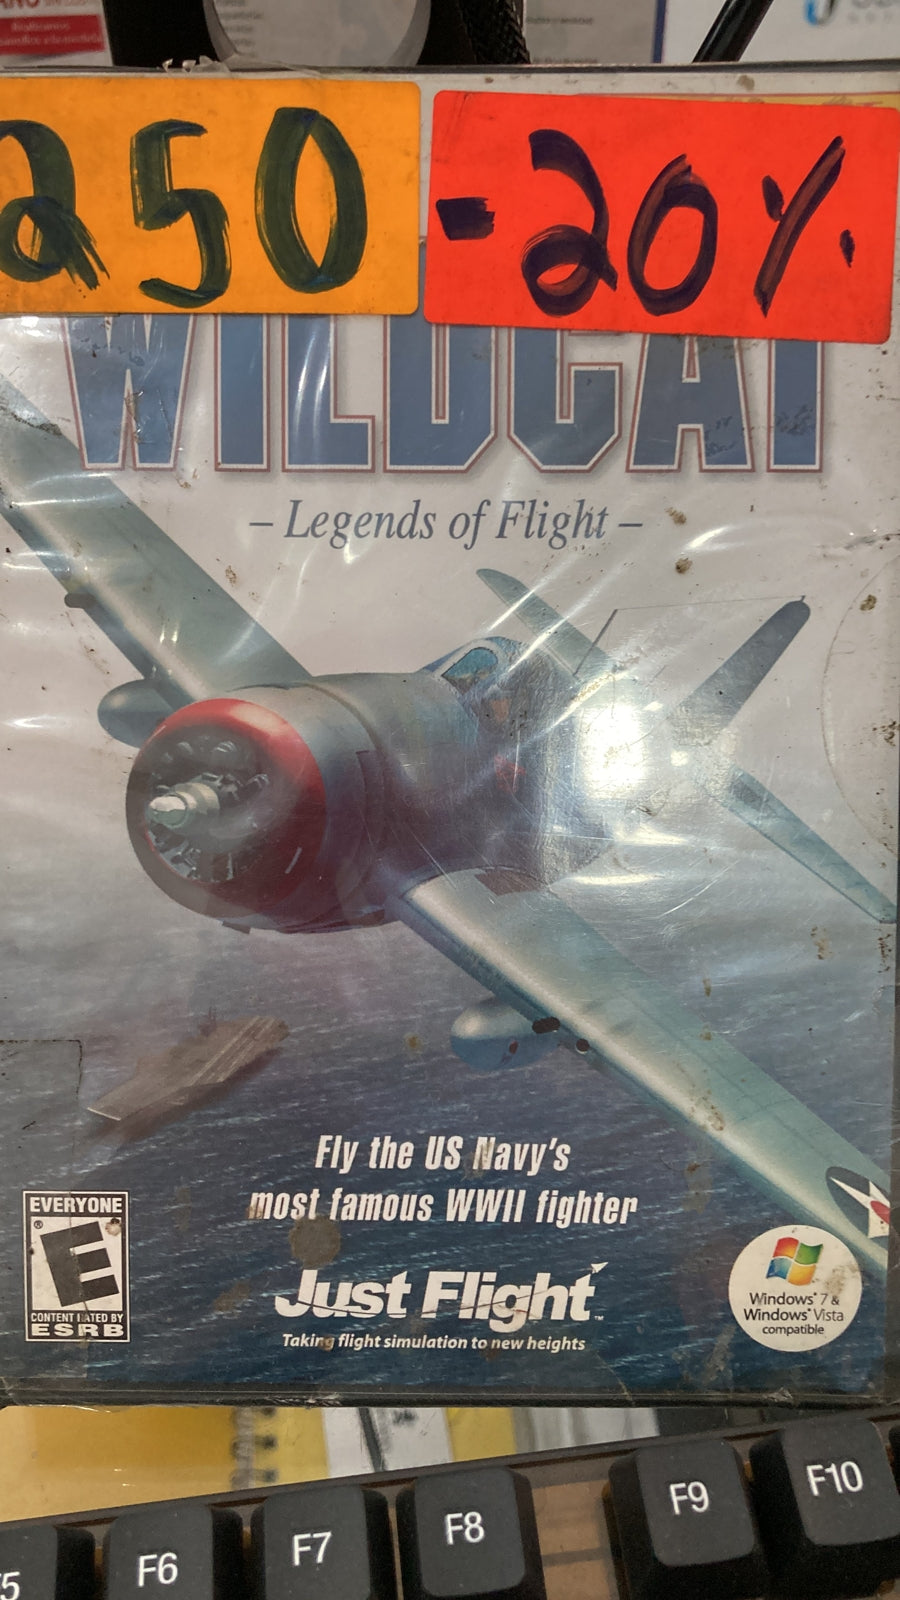 PC WILDCAT LEGEND OF FLIGHT